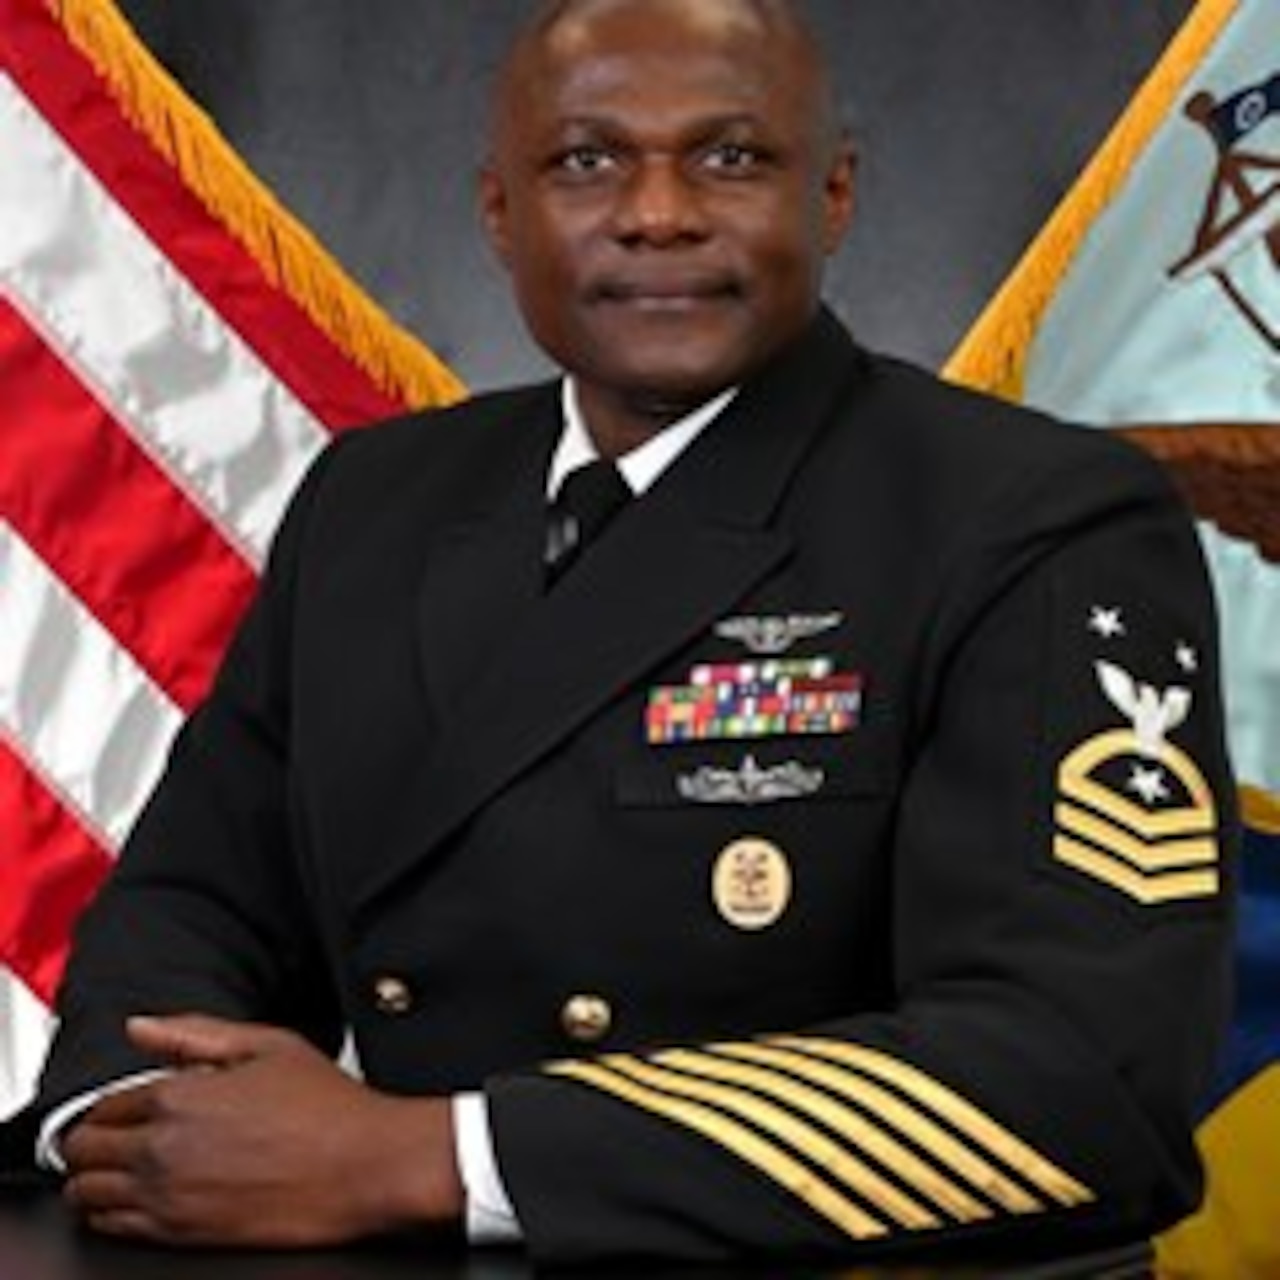 Command Master Chief McKenzie